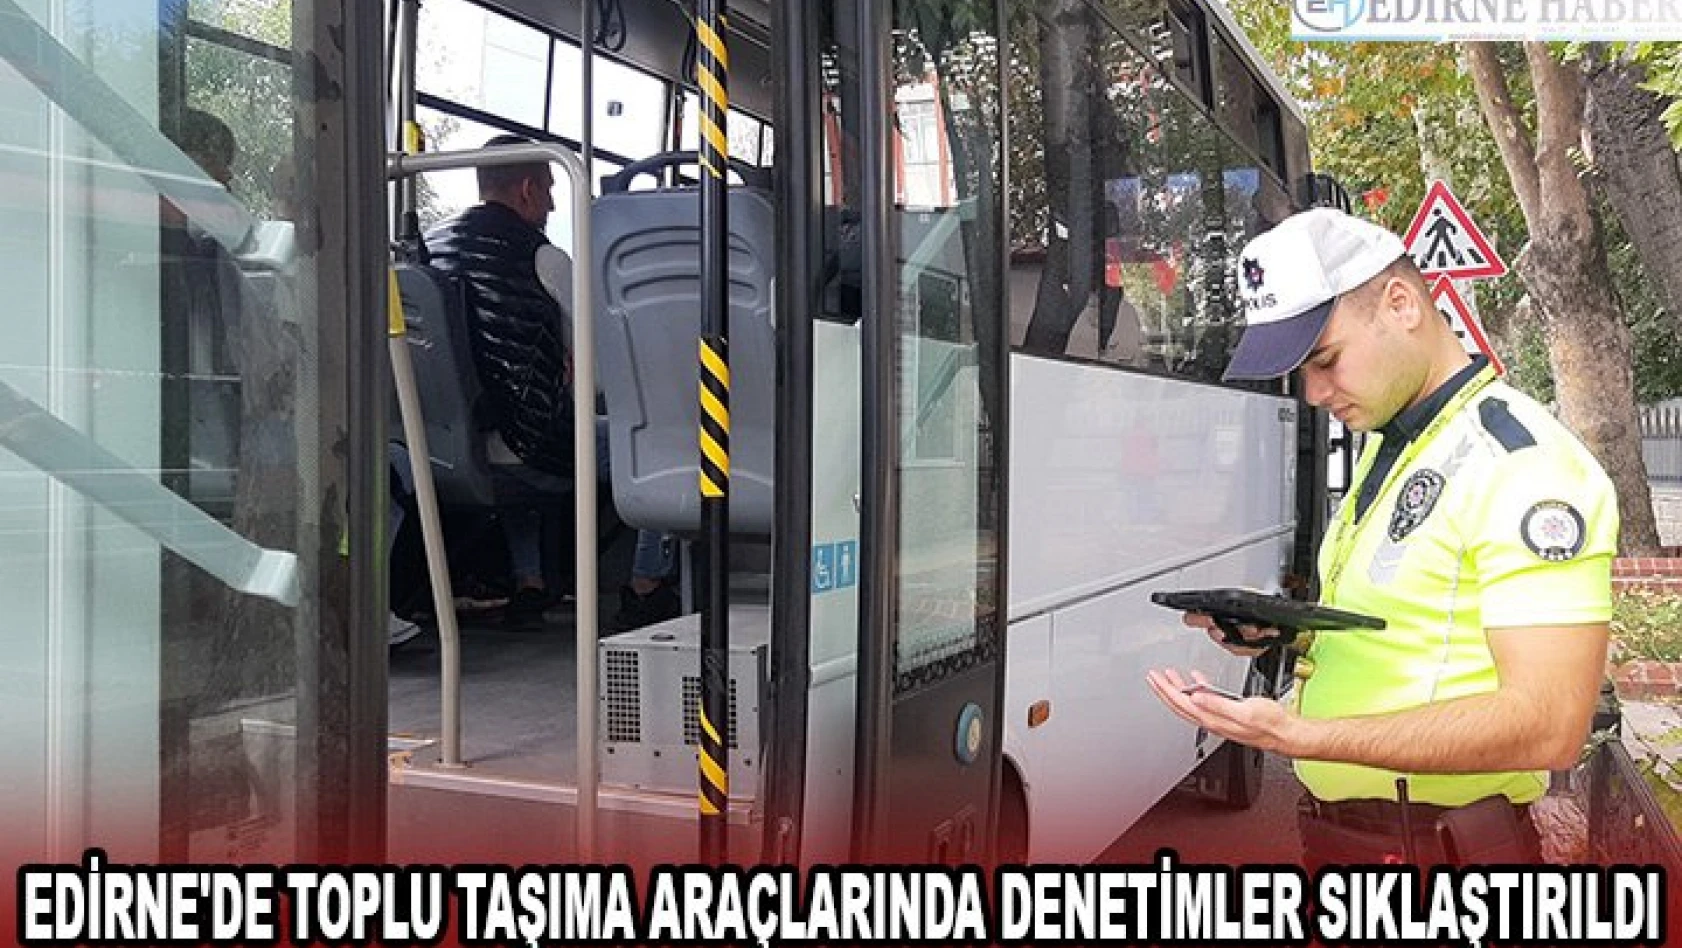 Edirne'de toplu taşıma araçlarında denetimler sıklaştırıldı